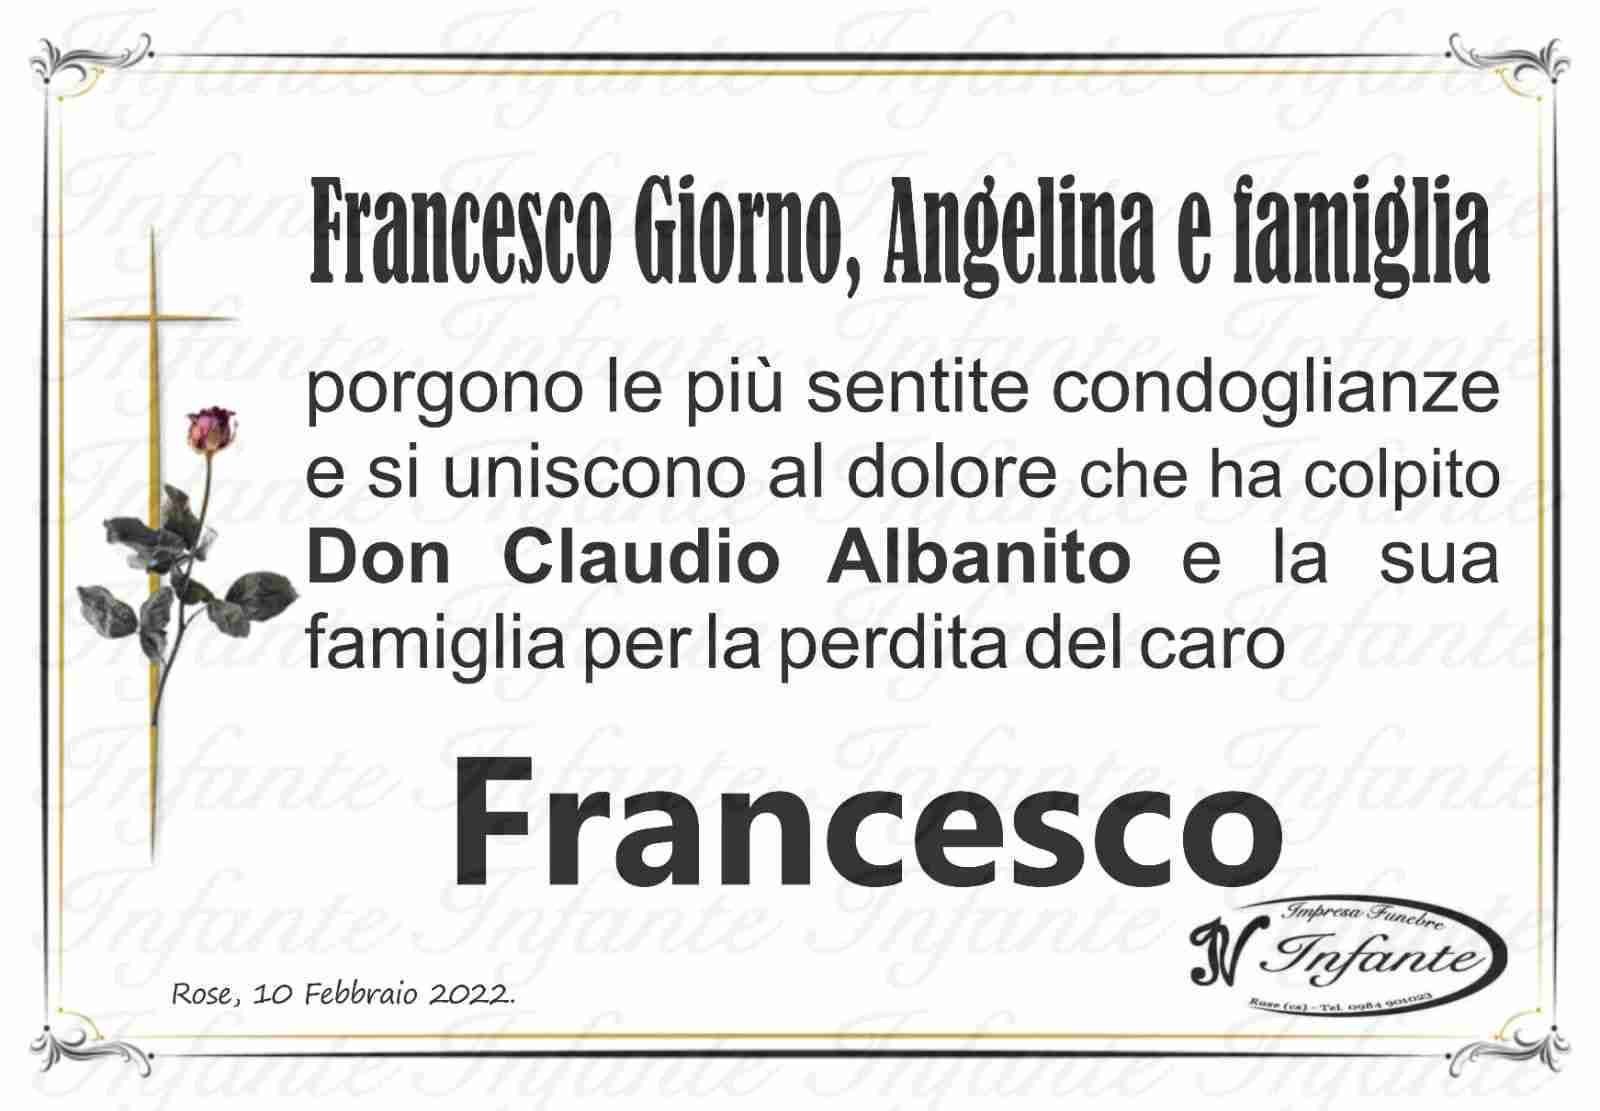 Francesco Albanito